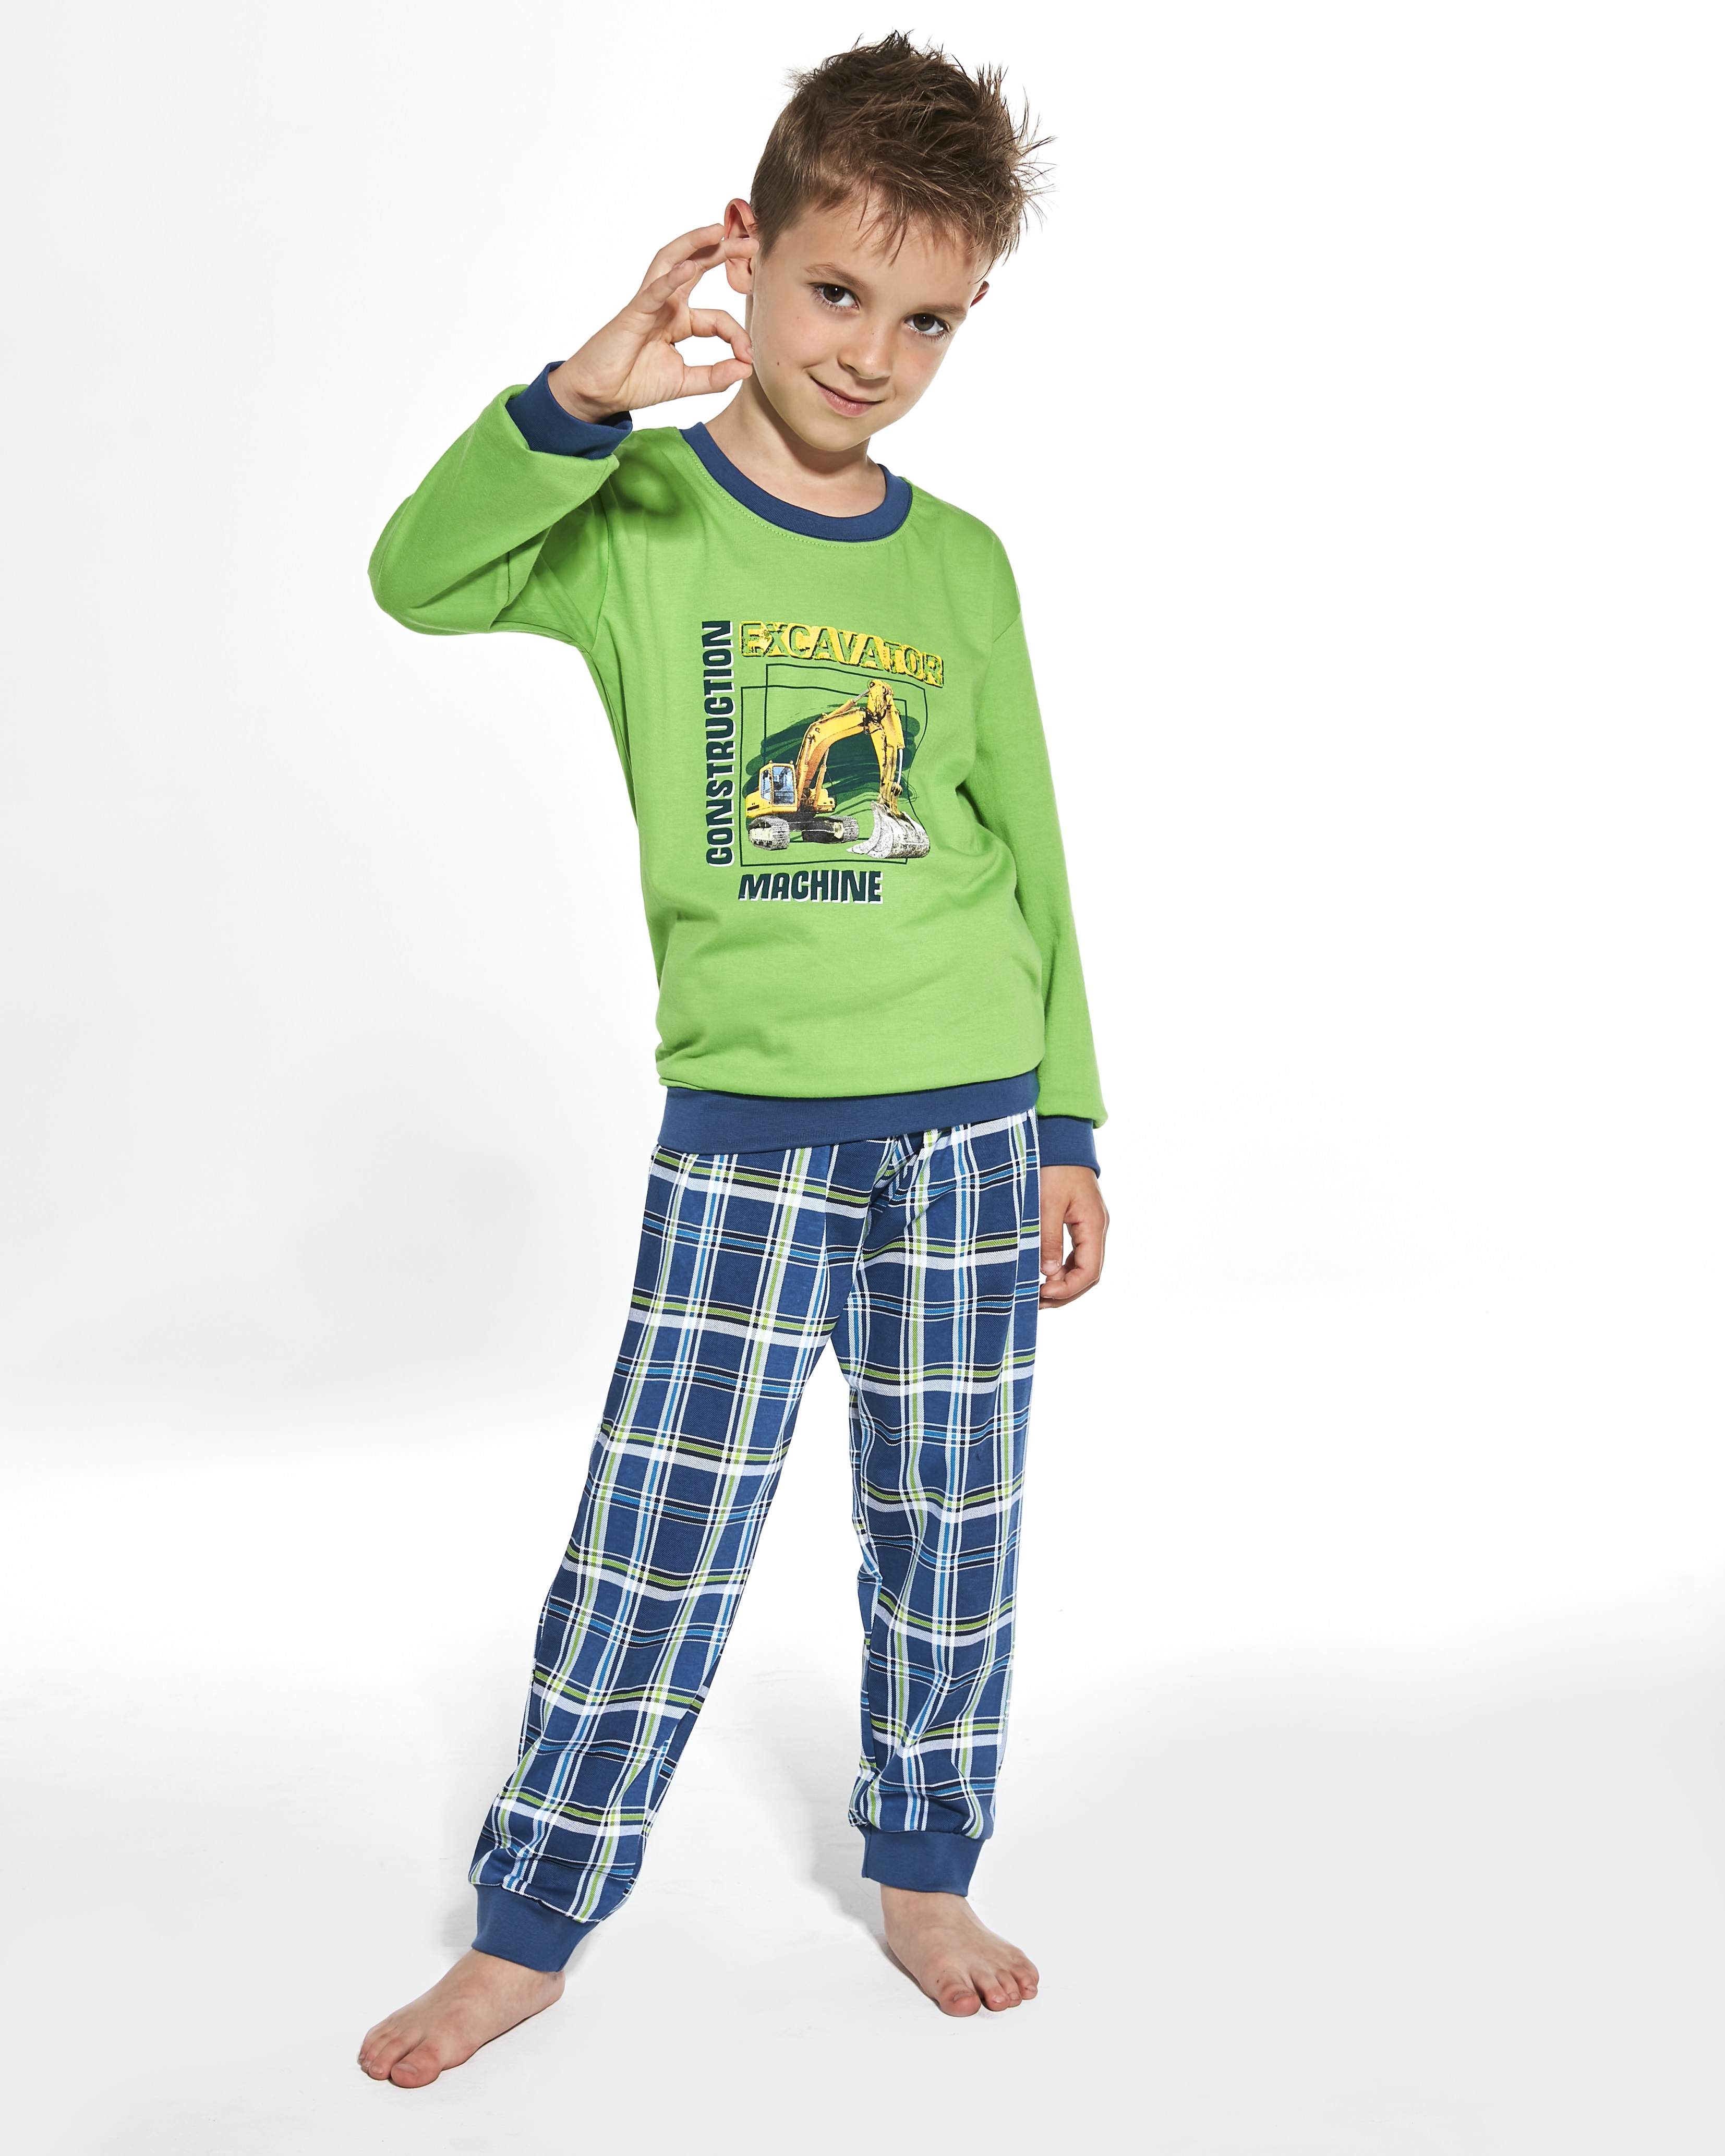 Chlapčenské pyžamo Machine 593 103 a 966 103 - CORNETTE